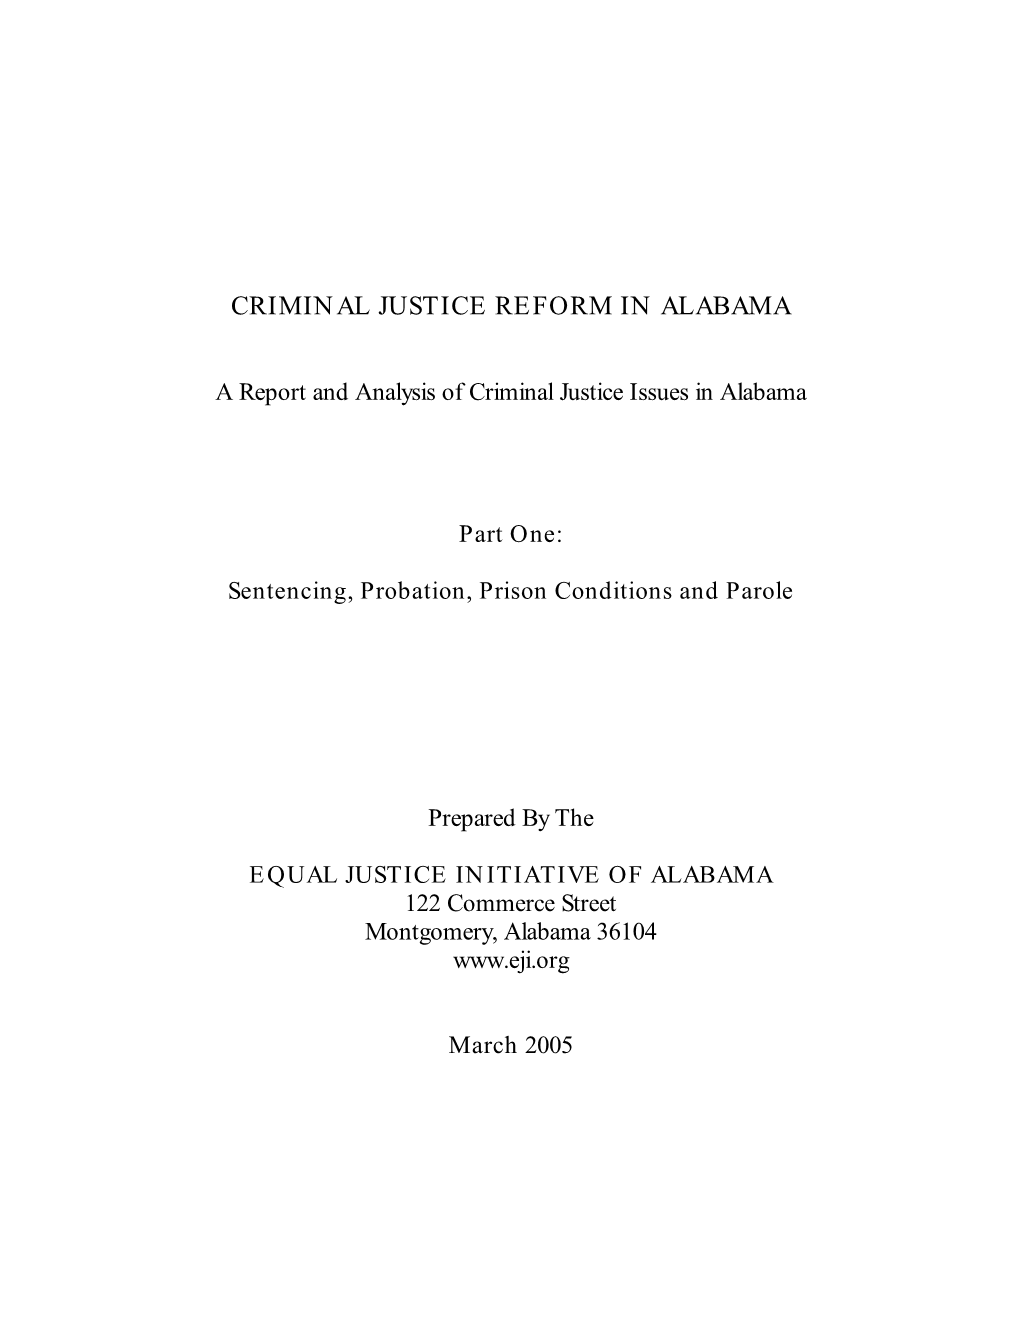 Criminal Justice Reform in Alabama